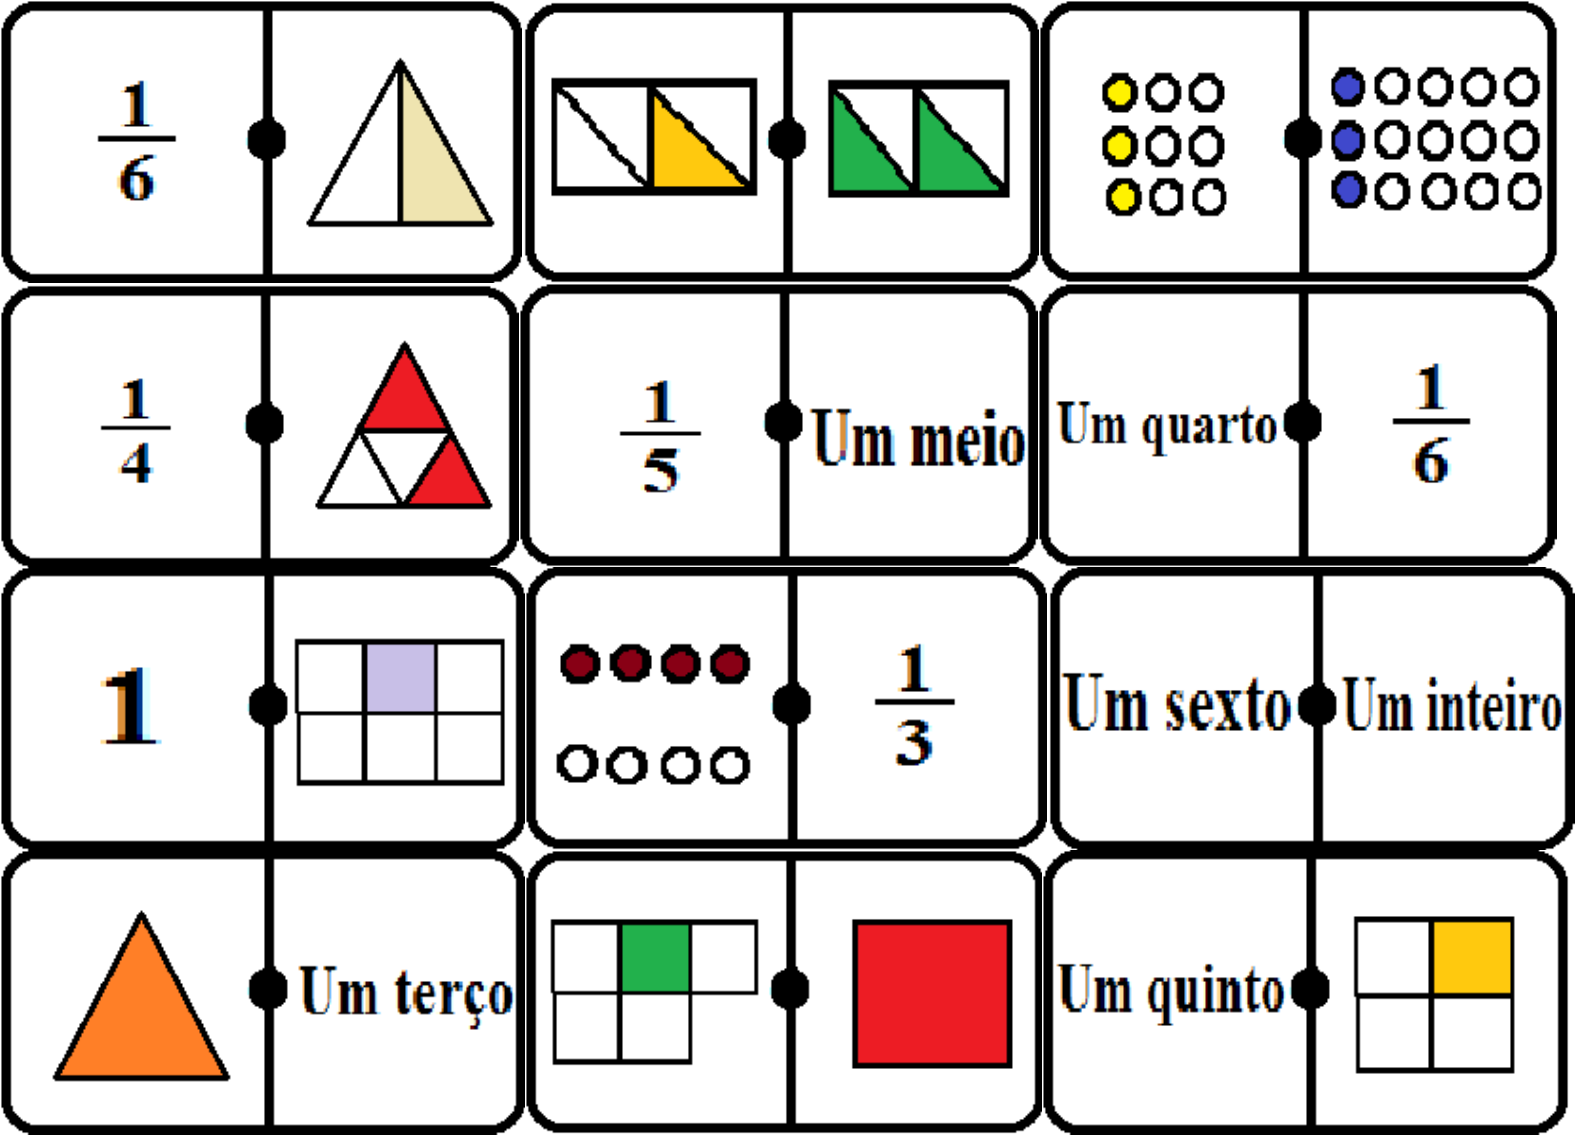 c) Que fração relacionada com as peças de dominó representa o maior número?  E o menor número ?? pfvr me 